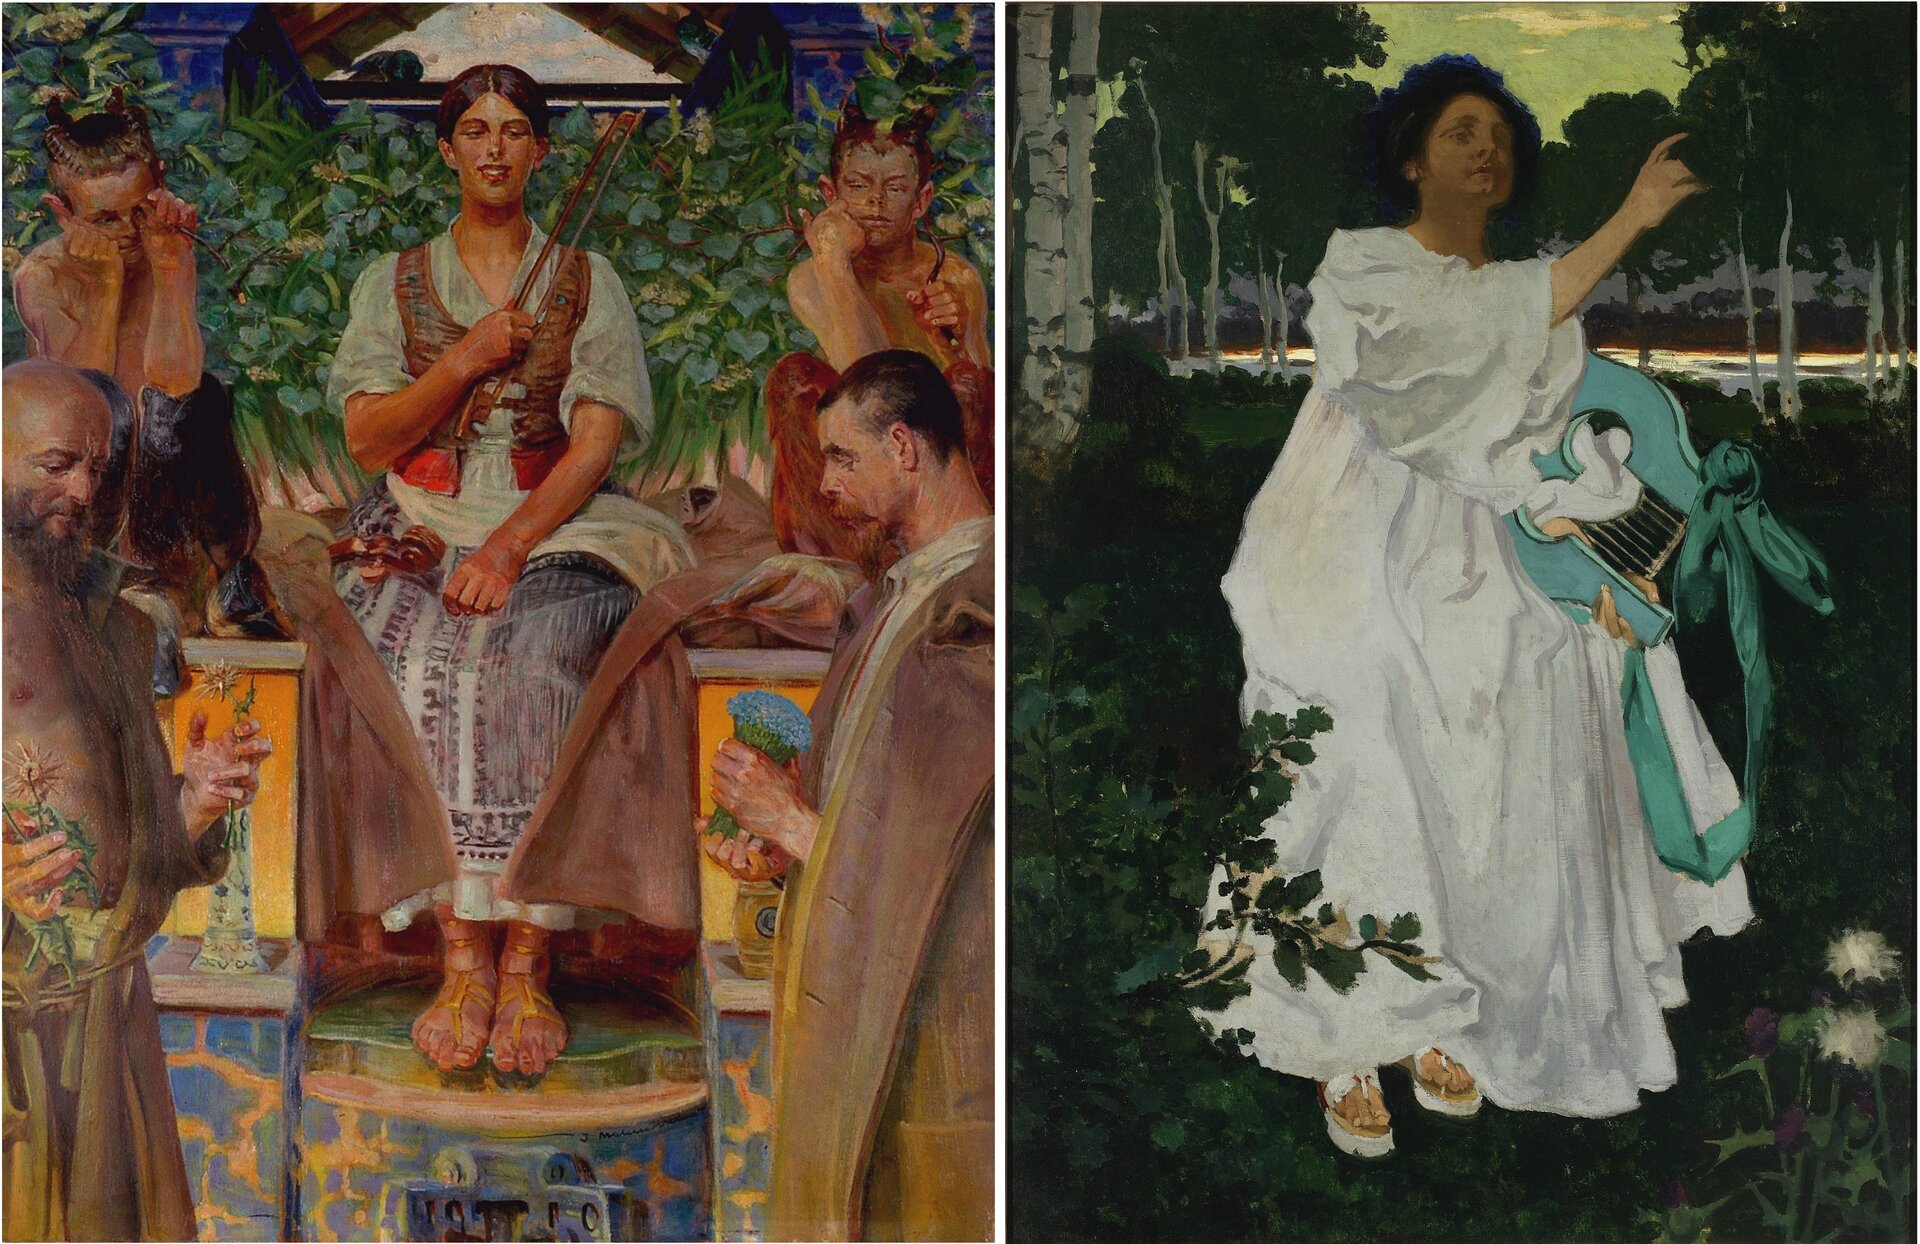 Ilustracja składa się z dwóch obrazów. Obraz po lewej przedstawia siedzącą na kolorowym tronie kobietę w jasnej sukni z ciemną kamizelką, która ma spięte, czarne włosy, zamknięte oczy i trzyma w ręku smyczek. Po lewej leżą skrzypce. Po lewej i prawej stronie kobiety siedzą dwa fauny. Po bokach stoją także dwa mężczyźni w długi szatach, trzymają kwiaty. W tle jest budynek pokryty roślinnością. Obraz po prawej przedstawia kobietę w białej sukni z niebieską lutnią. Kobieta ma długie, czarne włosy. Prawą rękę ma uniesioną. Wokół i w tle są drzewa.